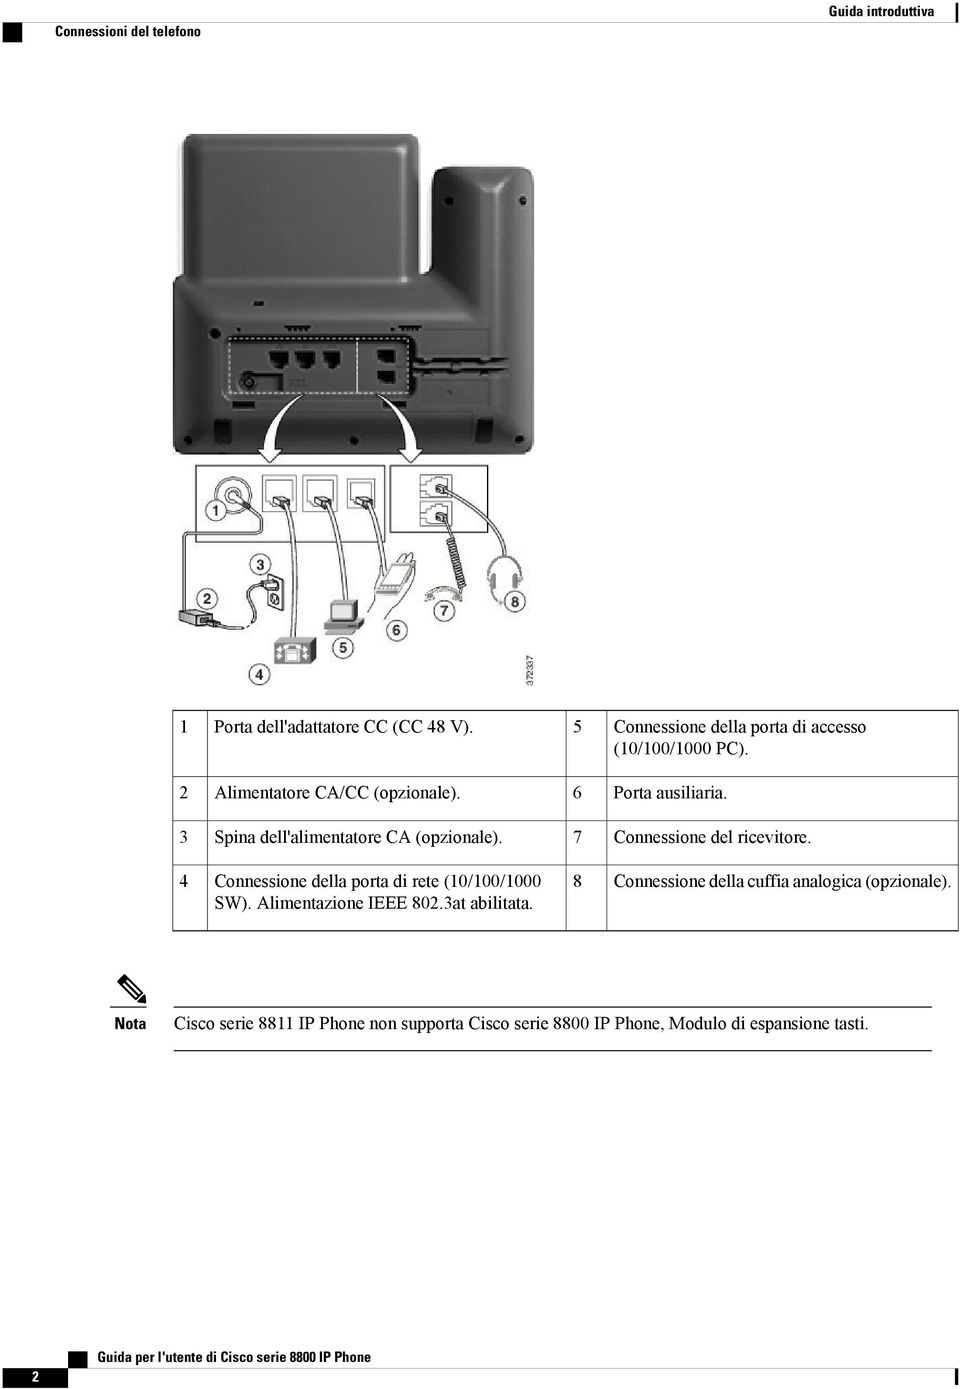 3 Spina dell'alimentatore CA (opzionale). 7 Connessione del ricevitore. 4 Connessione della porta di rete (10/100/1000 SW).